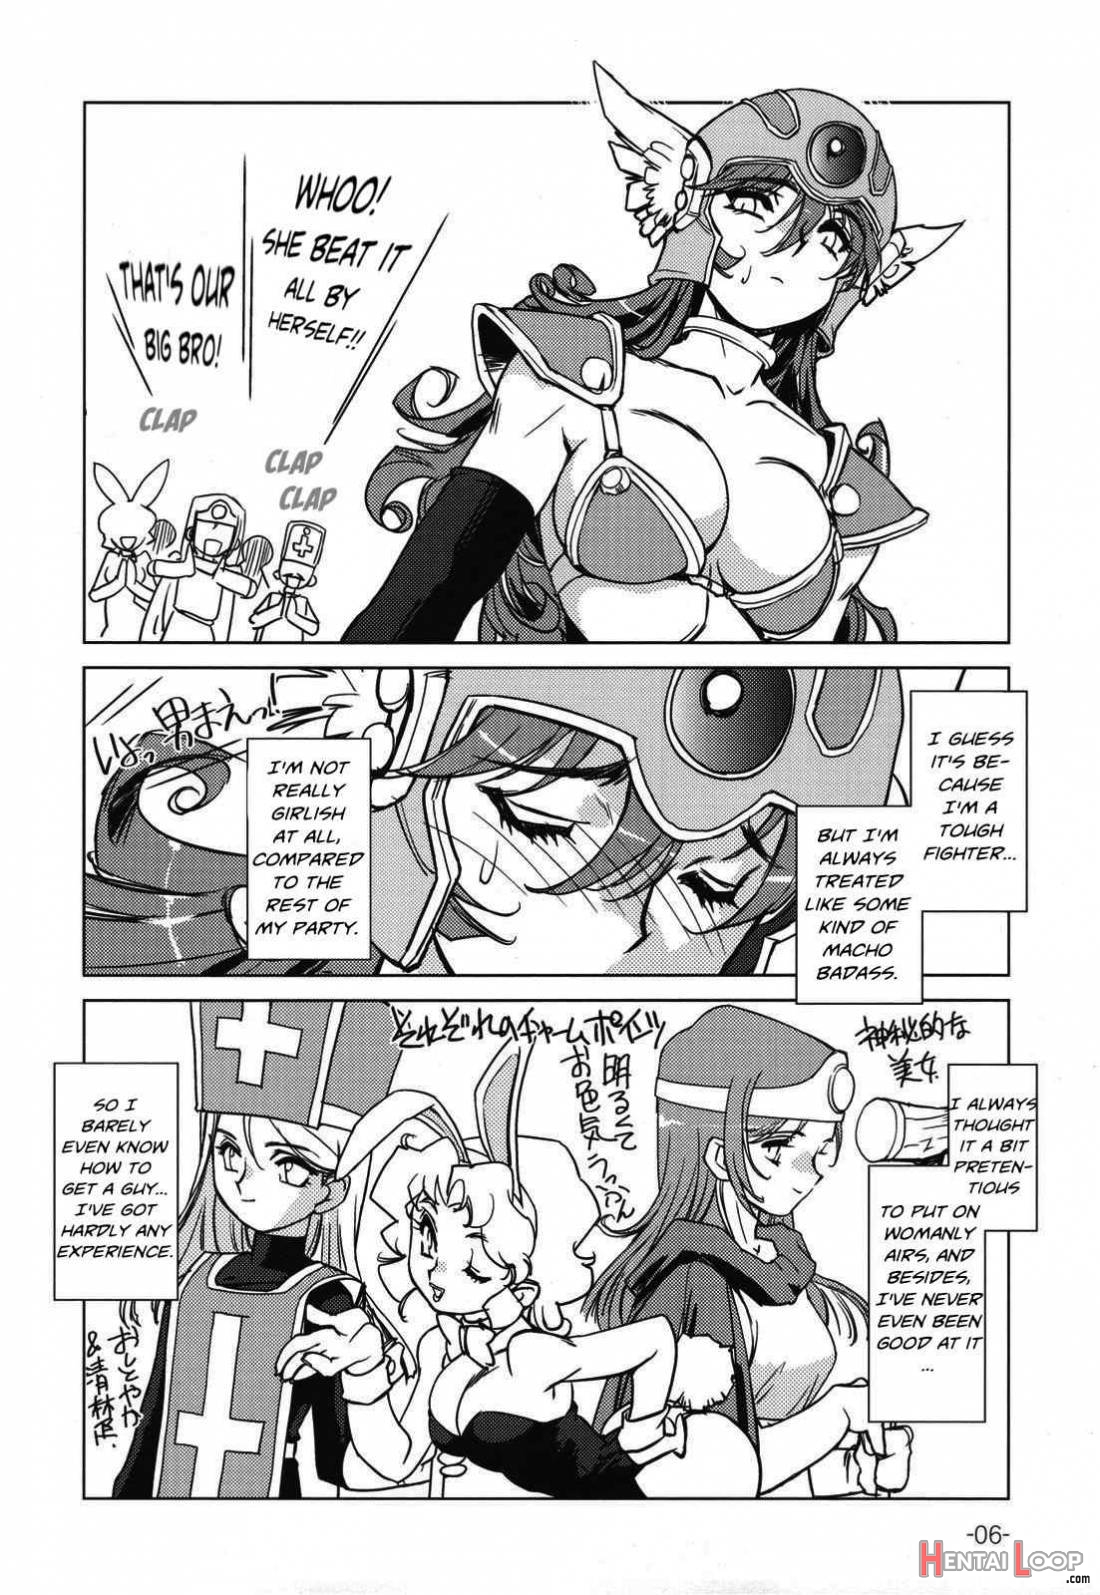 Onna Senshi no Himitsu page 4